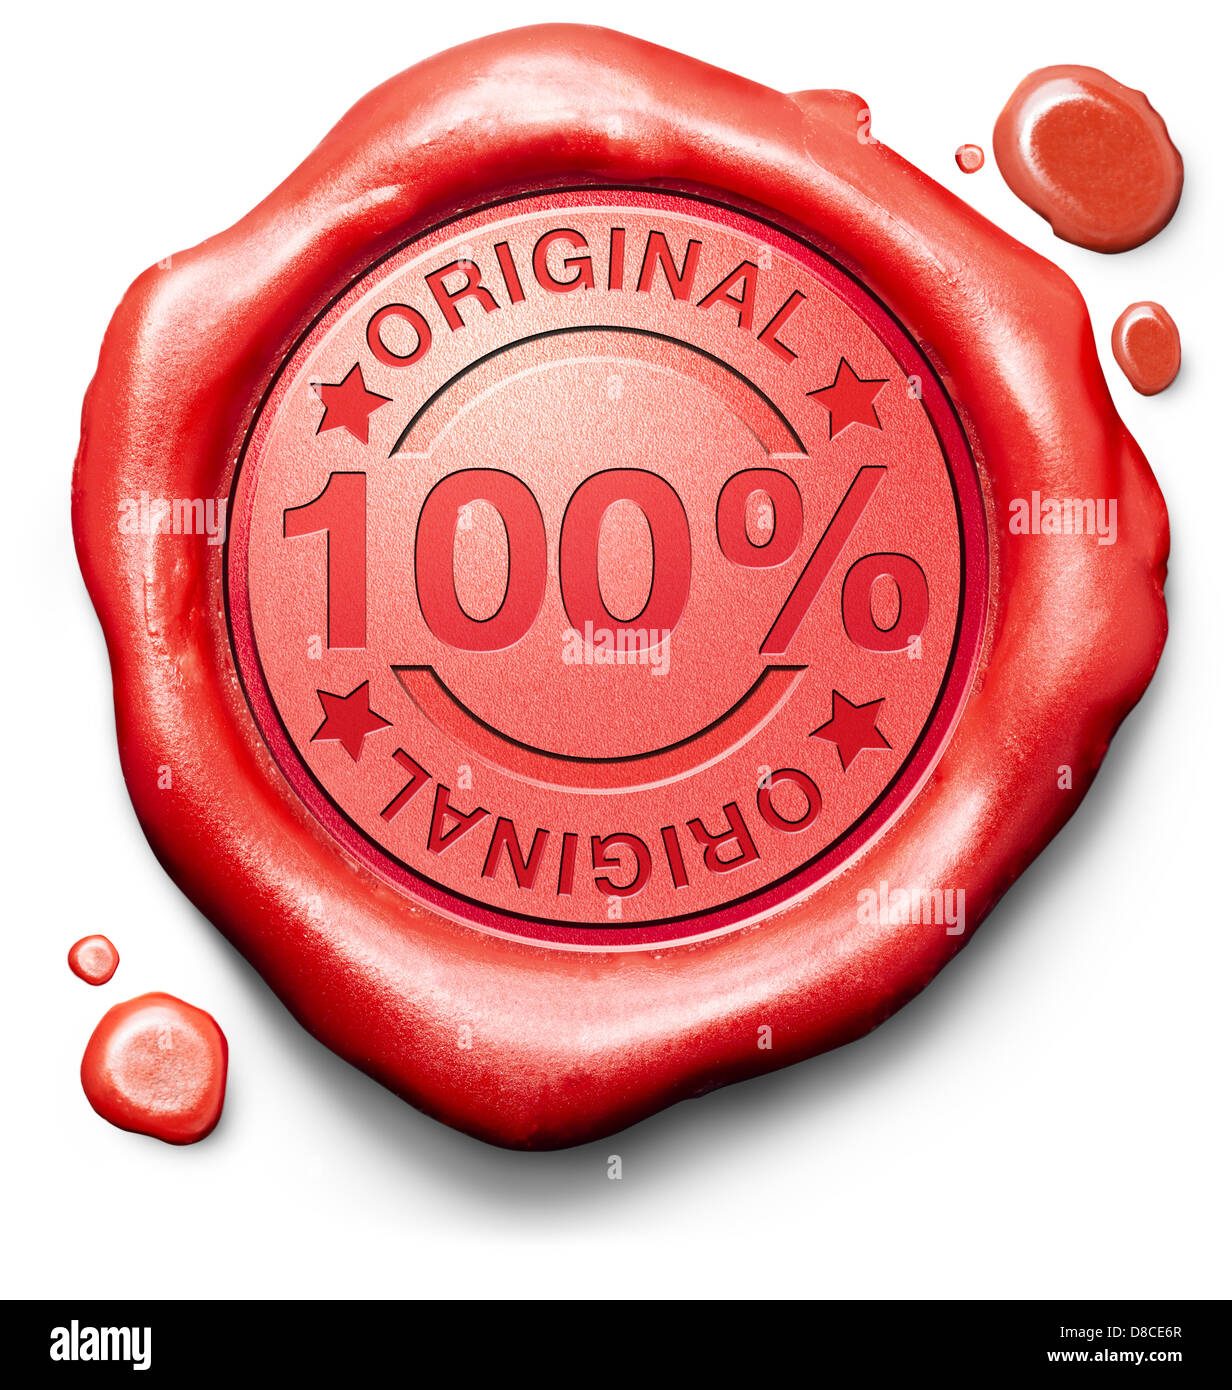 Original authentische Inhalte bzw. Produkte Qualität Label Authentizität garantiert 100 % Originalität neue Innovation rotes Wachs Siegelstempel Stockfoto